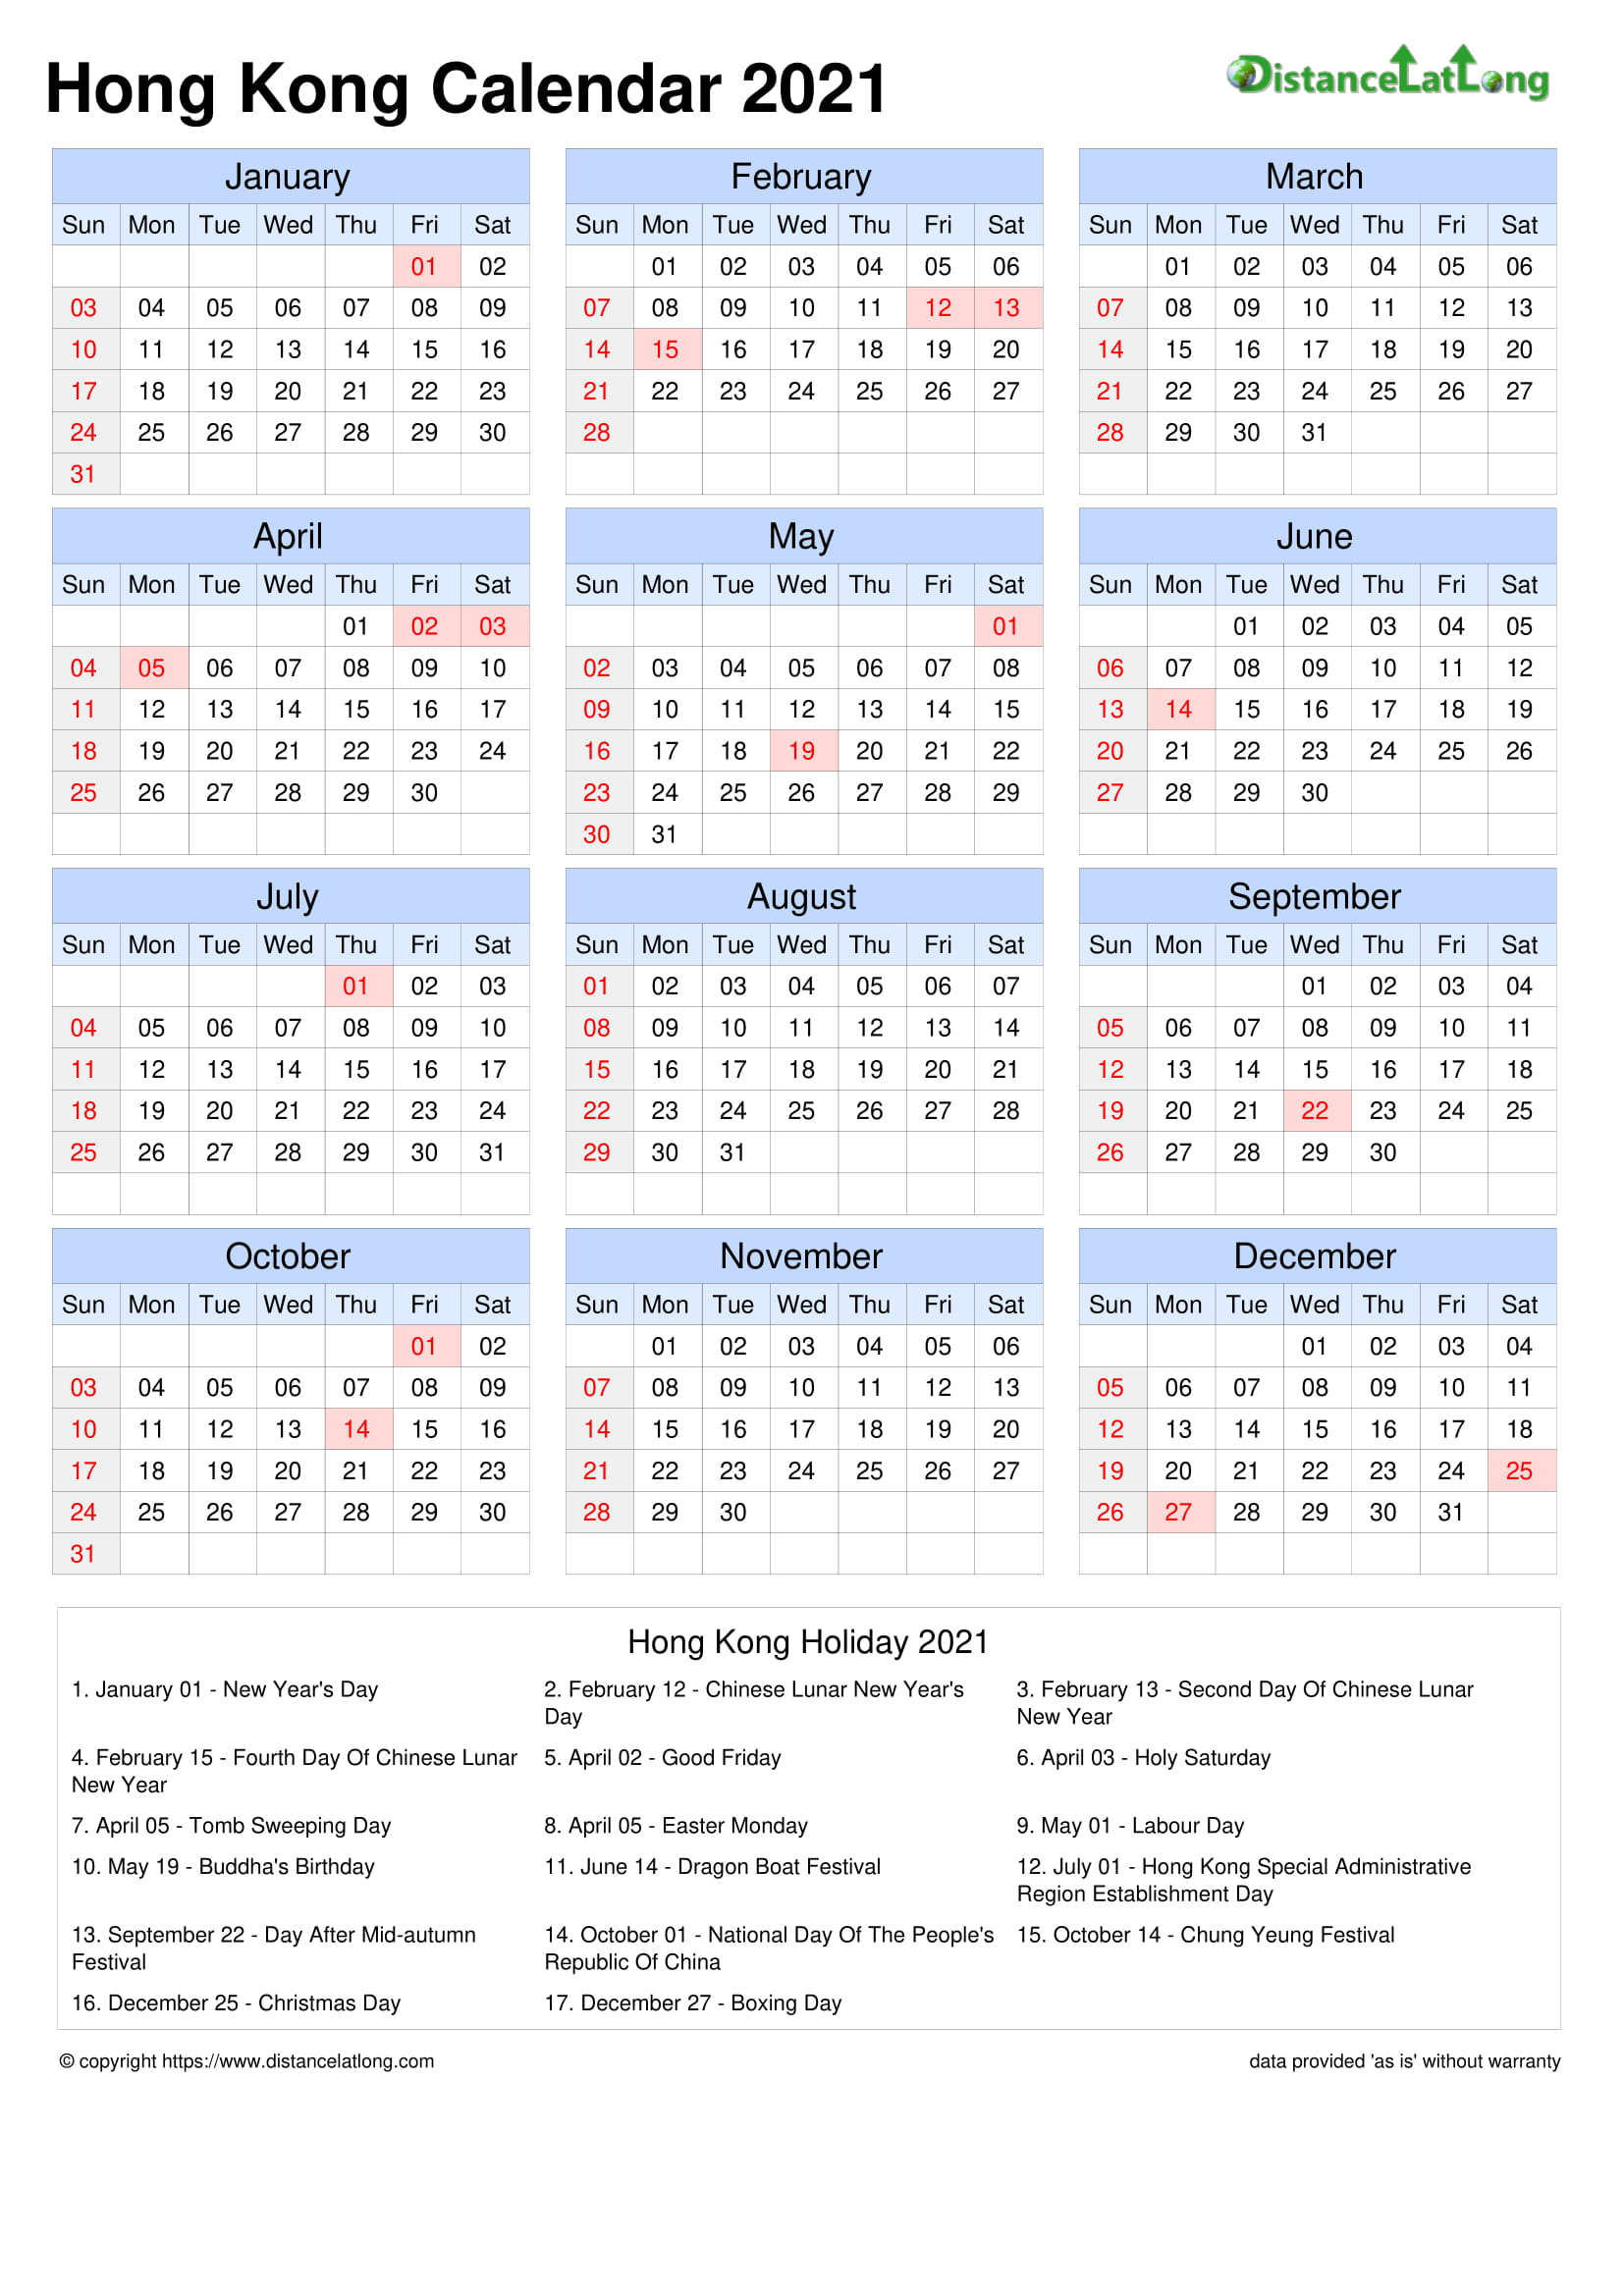 Calendar Horizontal Grid Sunday To Saturday Bank Holiday Hong Kong A4 Portrait 2021 pertaining to Hong Kong Calendar 2021 Template